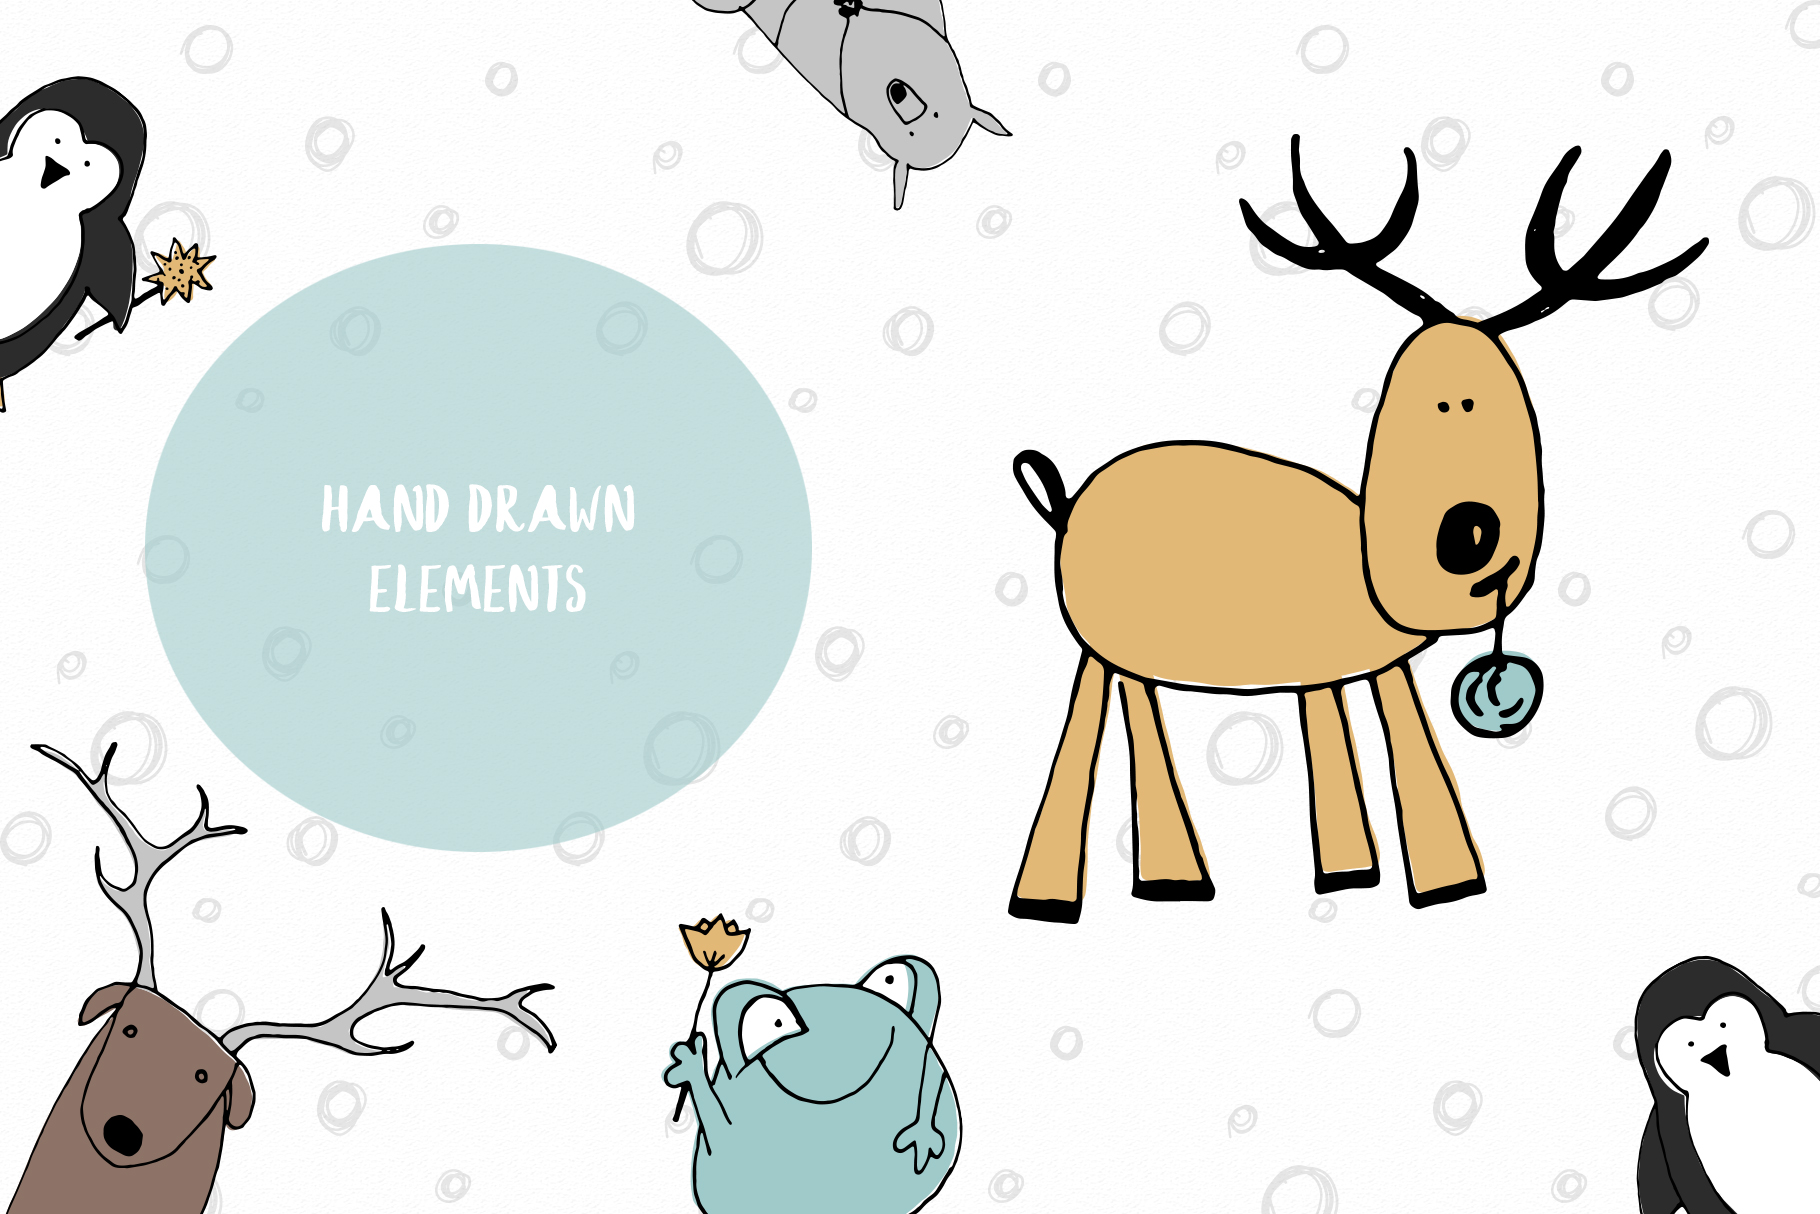 为婴儿托儿所定制的可爱动物插图图案素材合集包 Animals